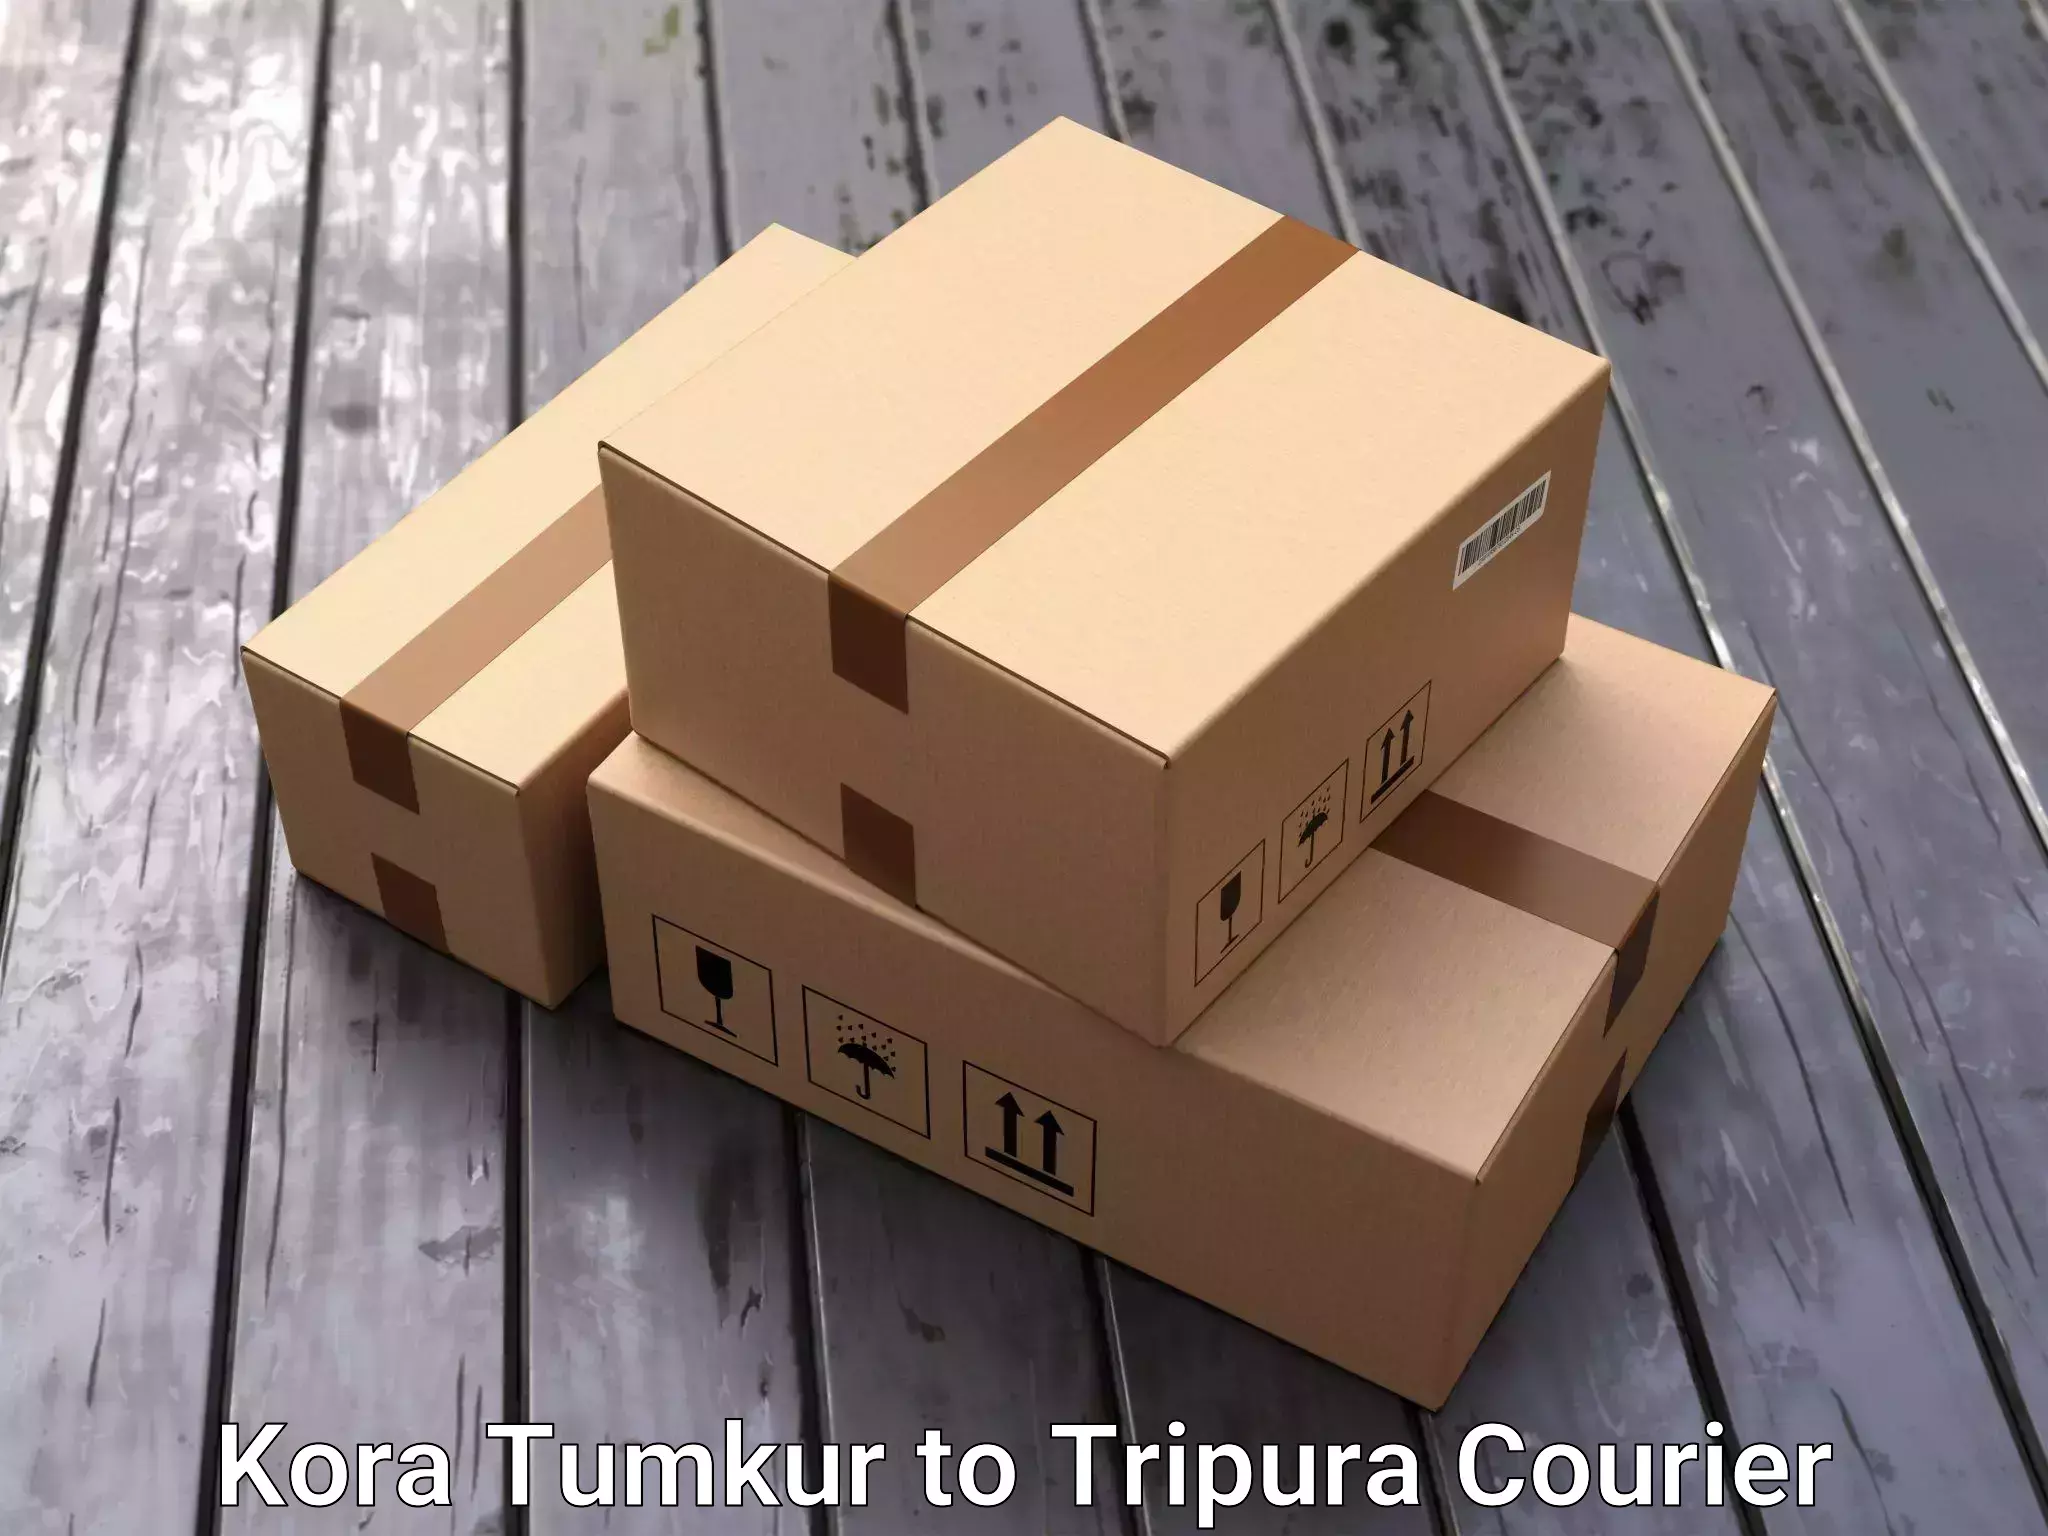 Efficient moving strategies Kora Tumkur to Manughat